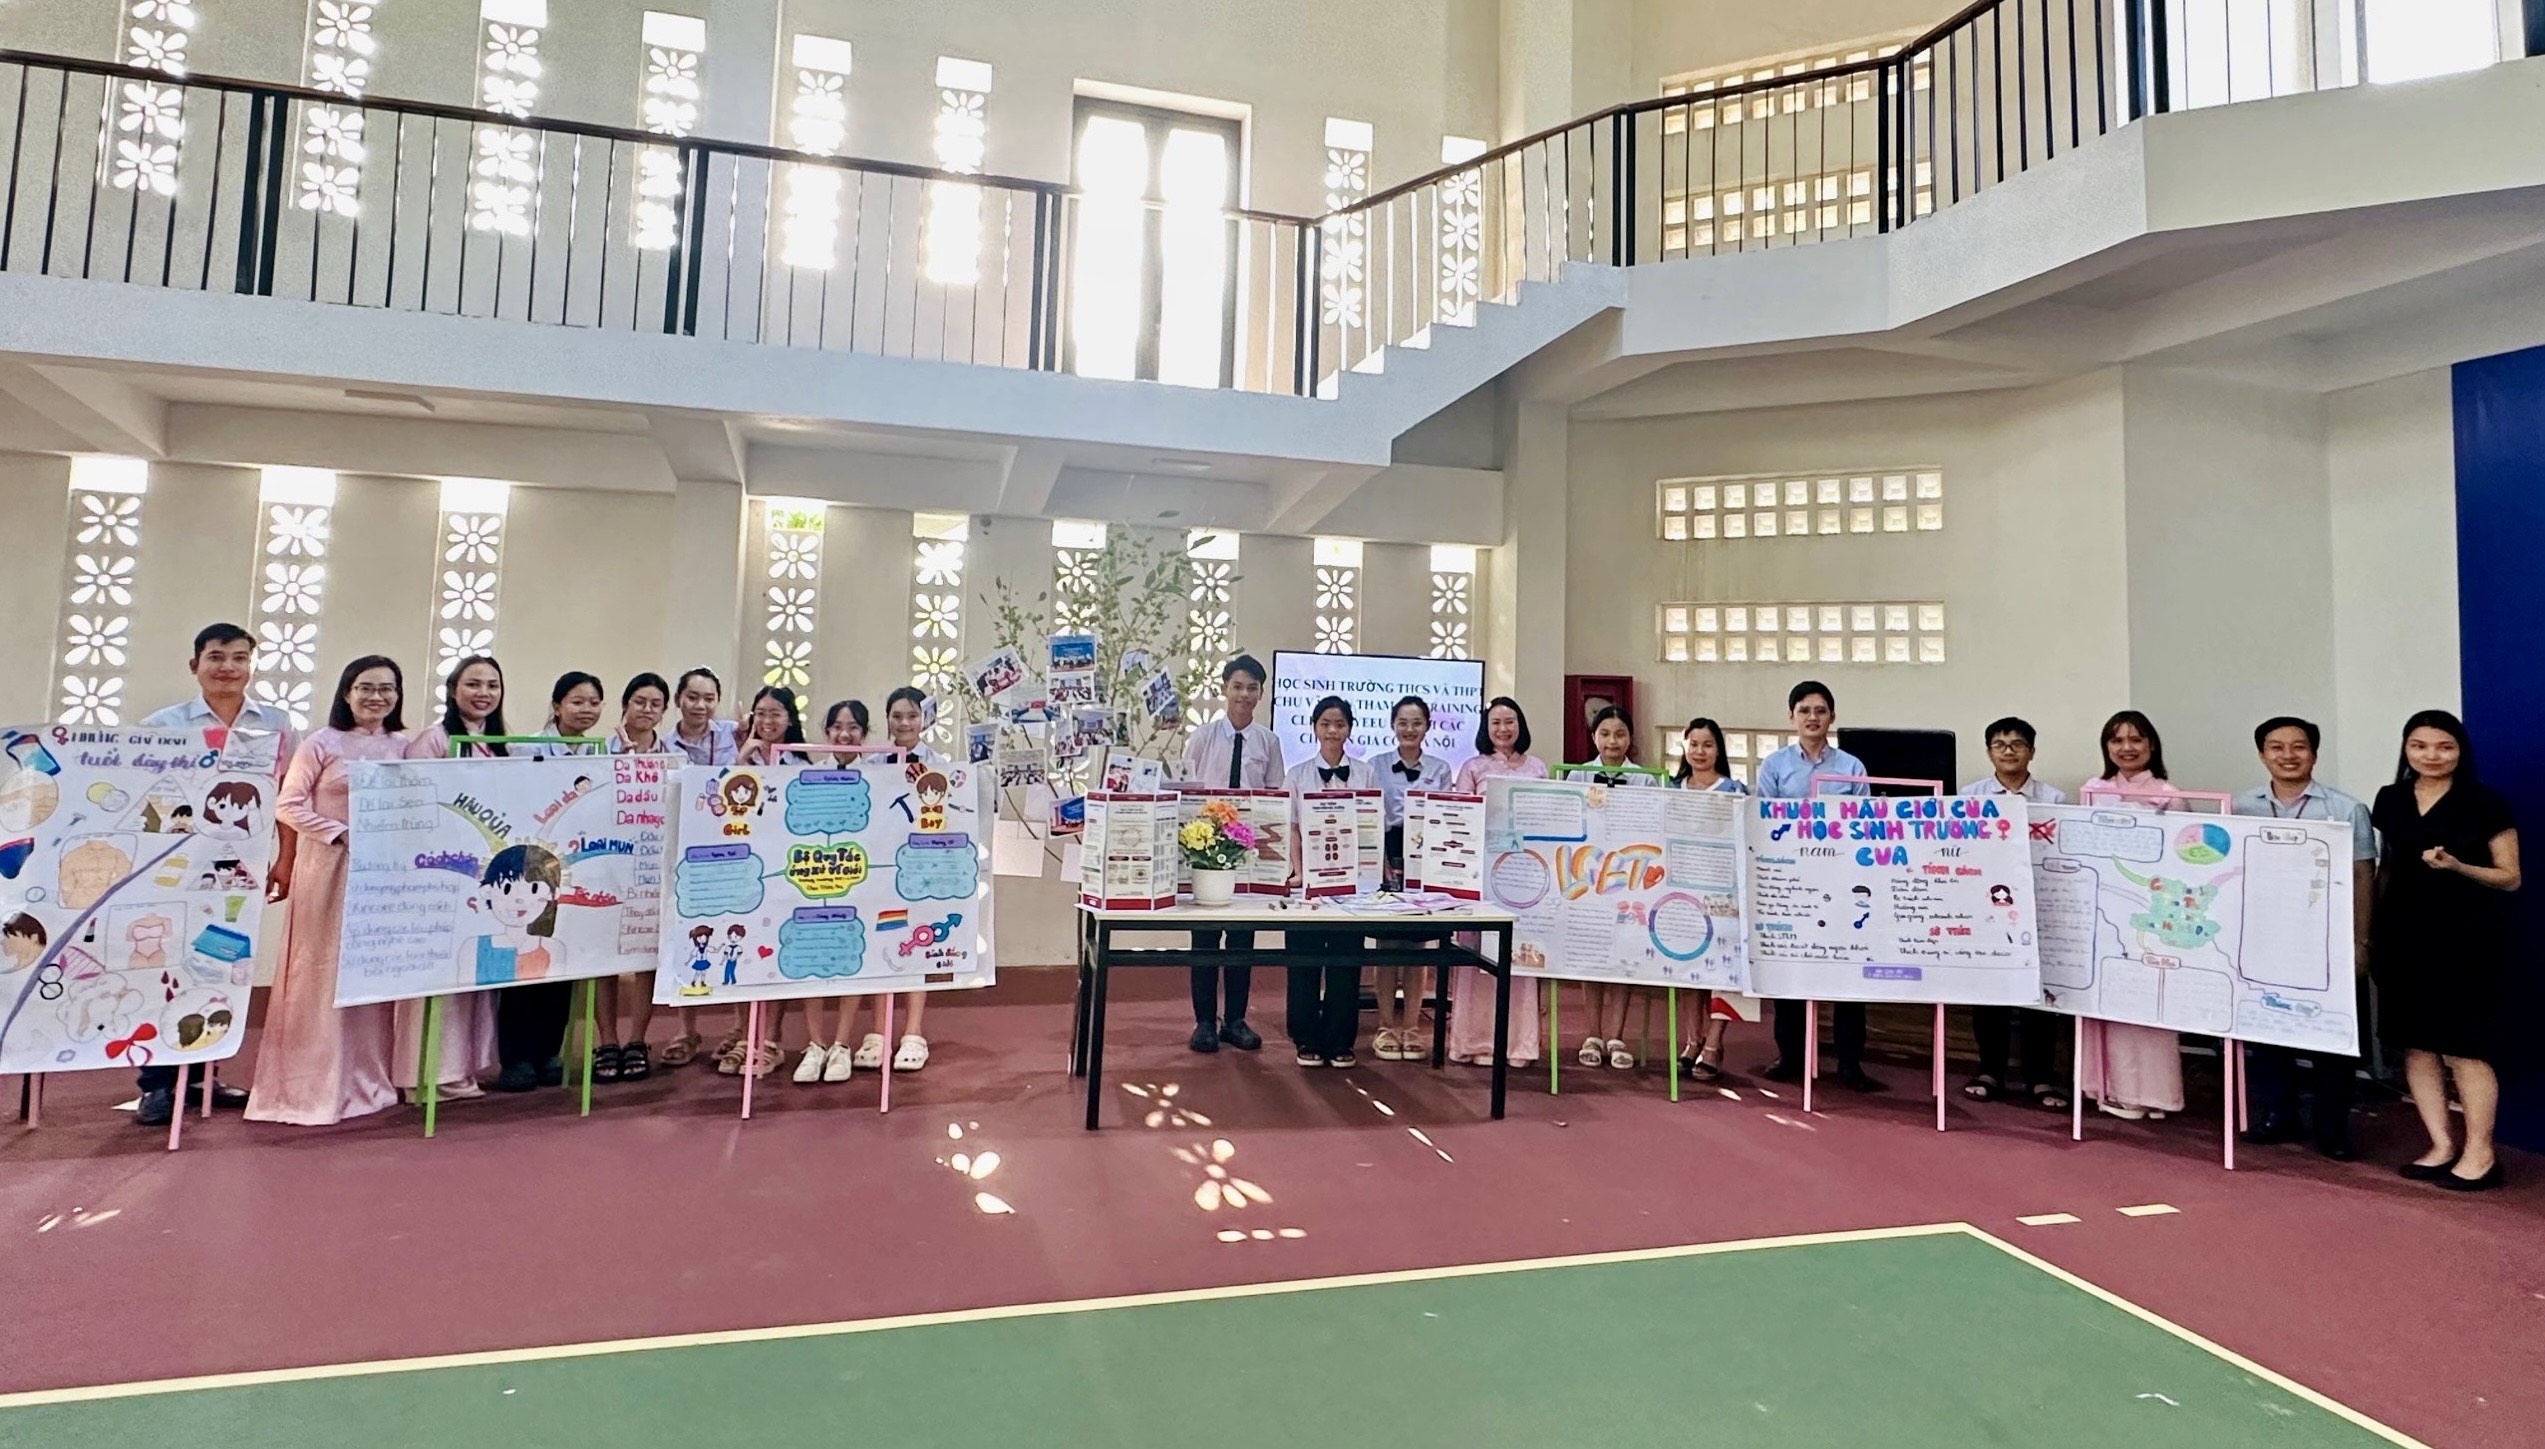 Tham gia dự án “Mô hình CLB Teenyeeu 24h”, các học sinh Hệ thống giáo dục Chu Văn An đã có những hoạt động ý nghĩa, bổ ích 